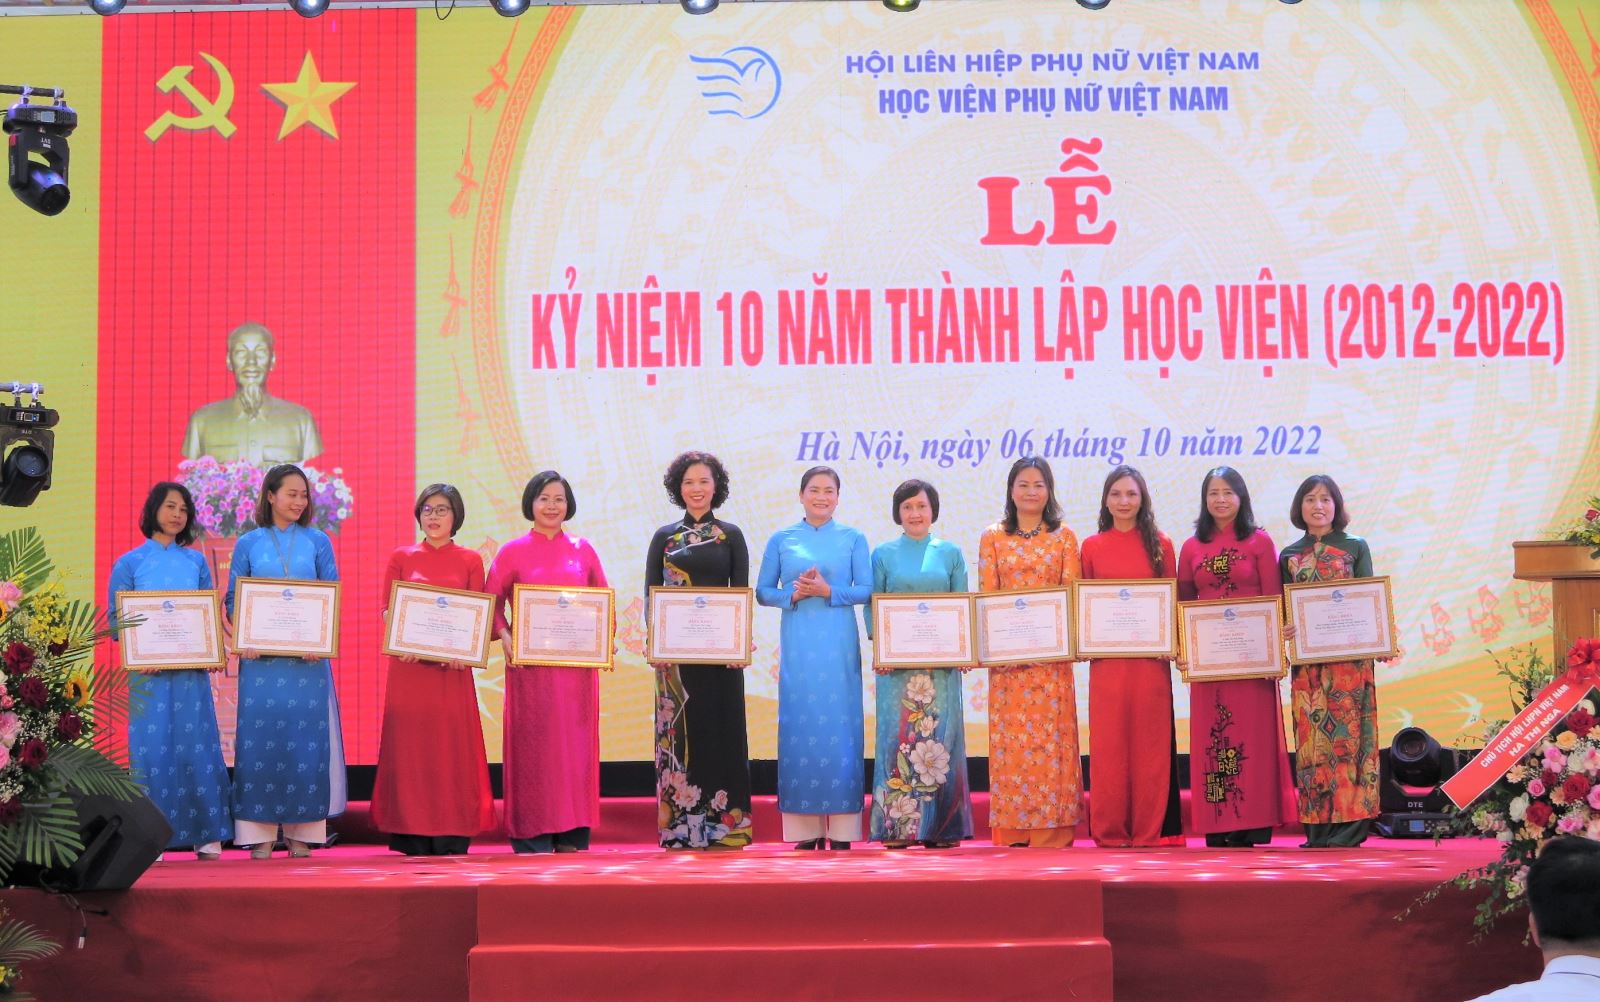 Học viện Phụ nữ Việt Nam - 10 năm thành lập, hơn 60 năm truyền thống vẻ vang (phần 2)